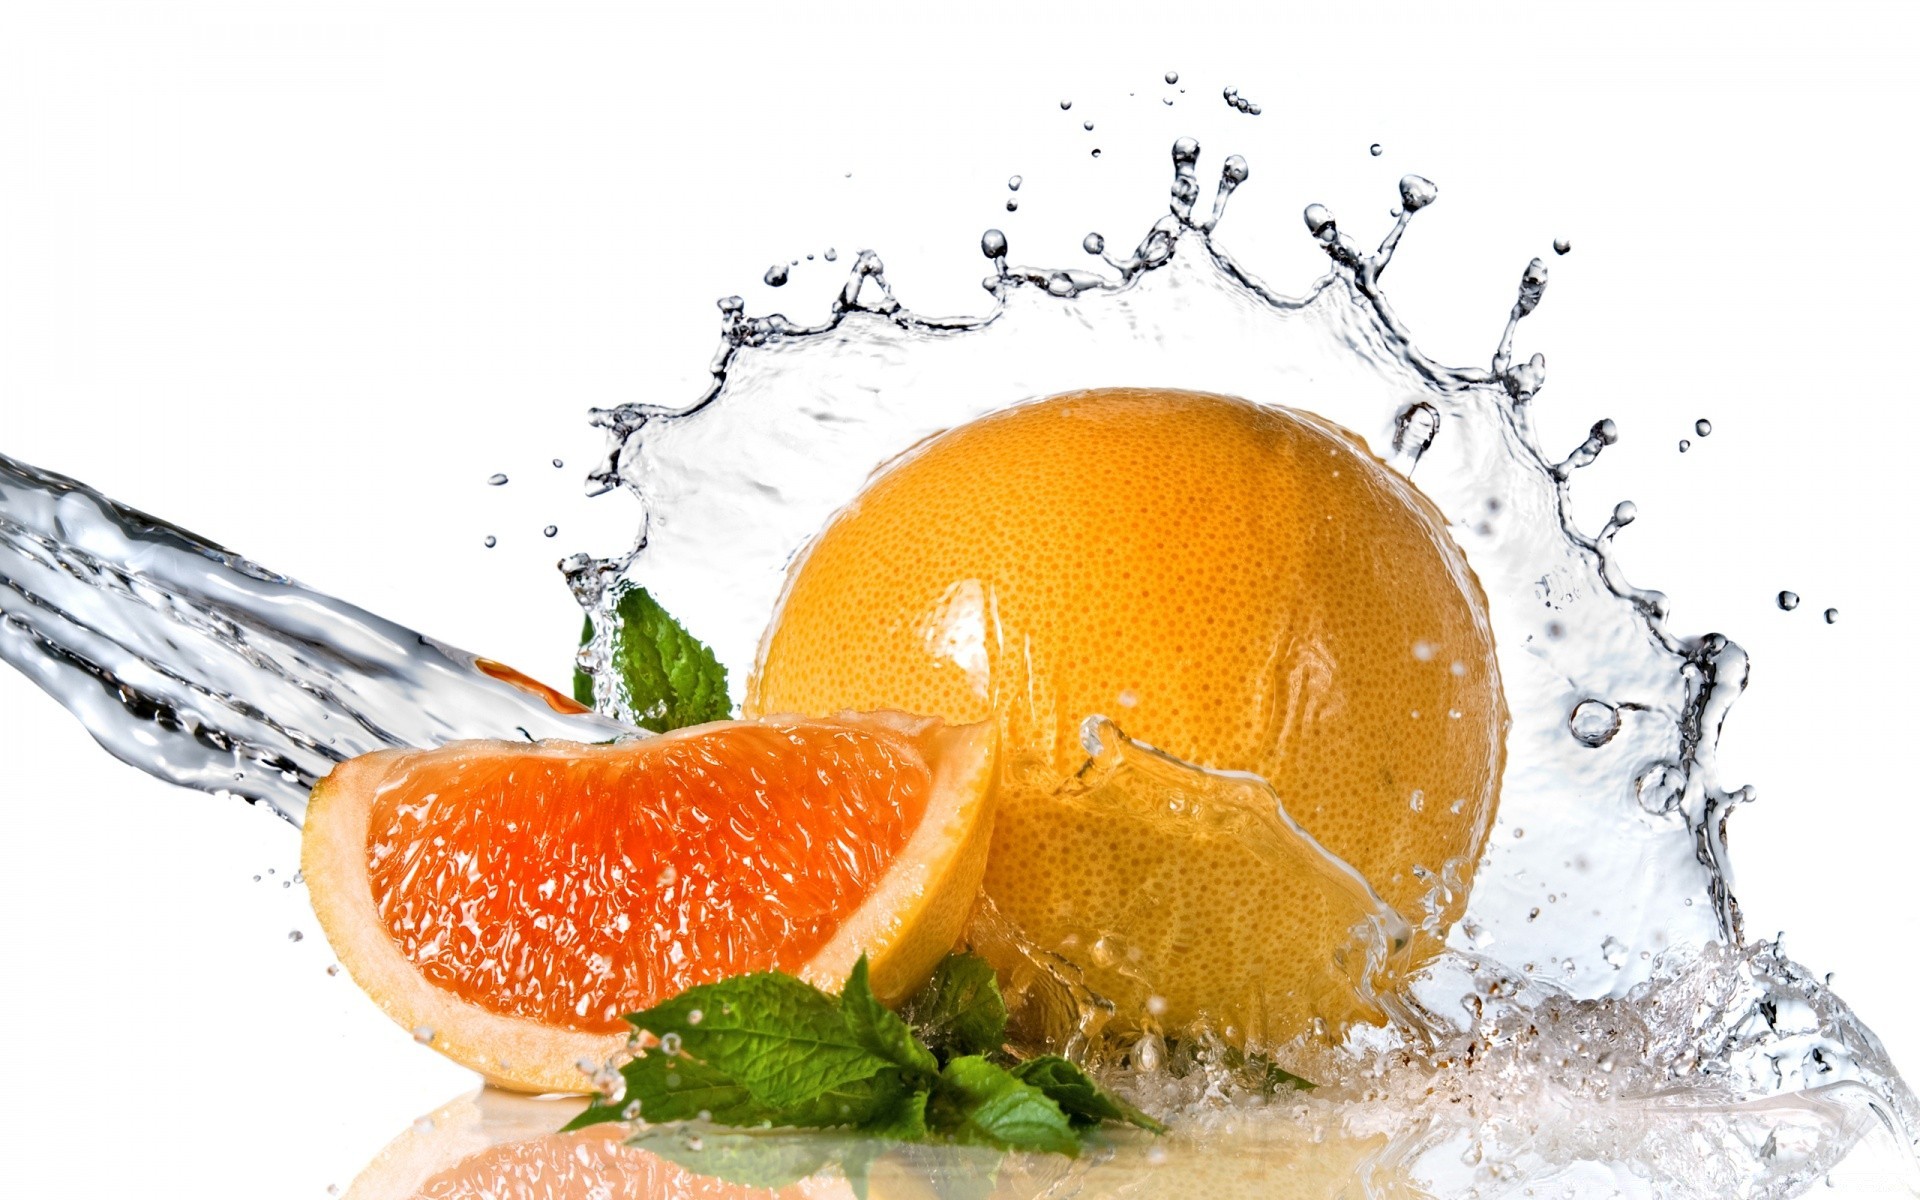 капельки и вода еда фрукты здоровый сочные мокрый здоровья пить освежение рабочего стола холодная падение сладкий срез сок лимон